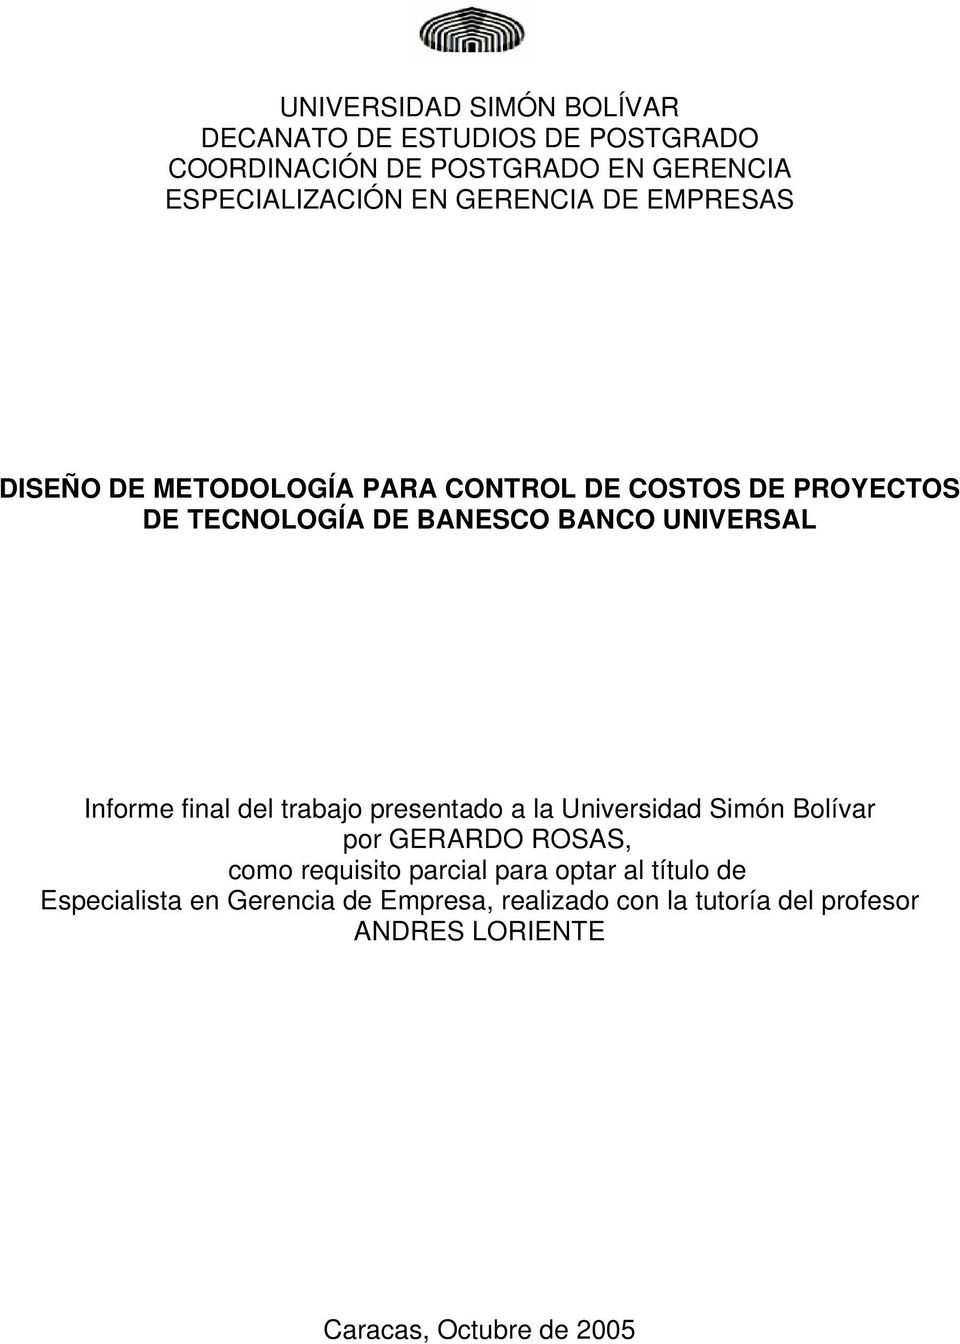 Informe final del trabajo presentado a la Universidad Simón Bolívar por GERARDO ROSAS, como requisito parcial para optar